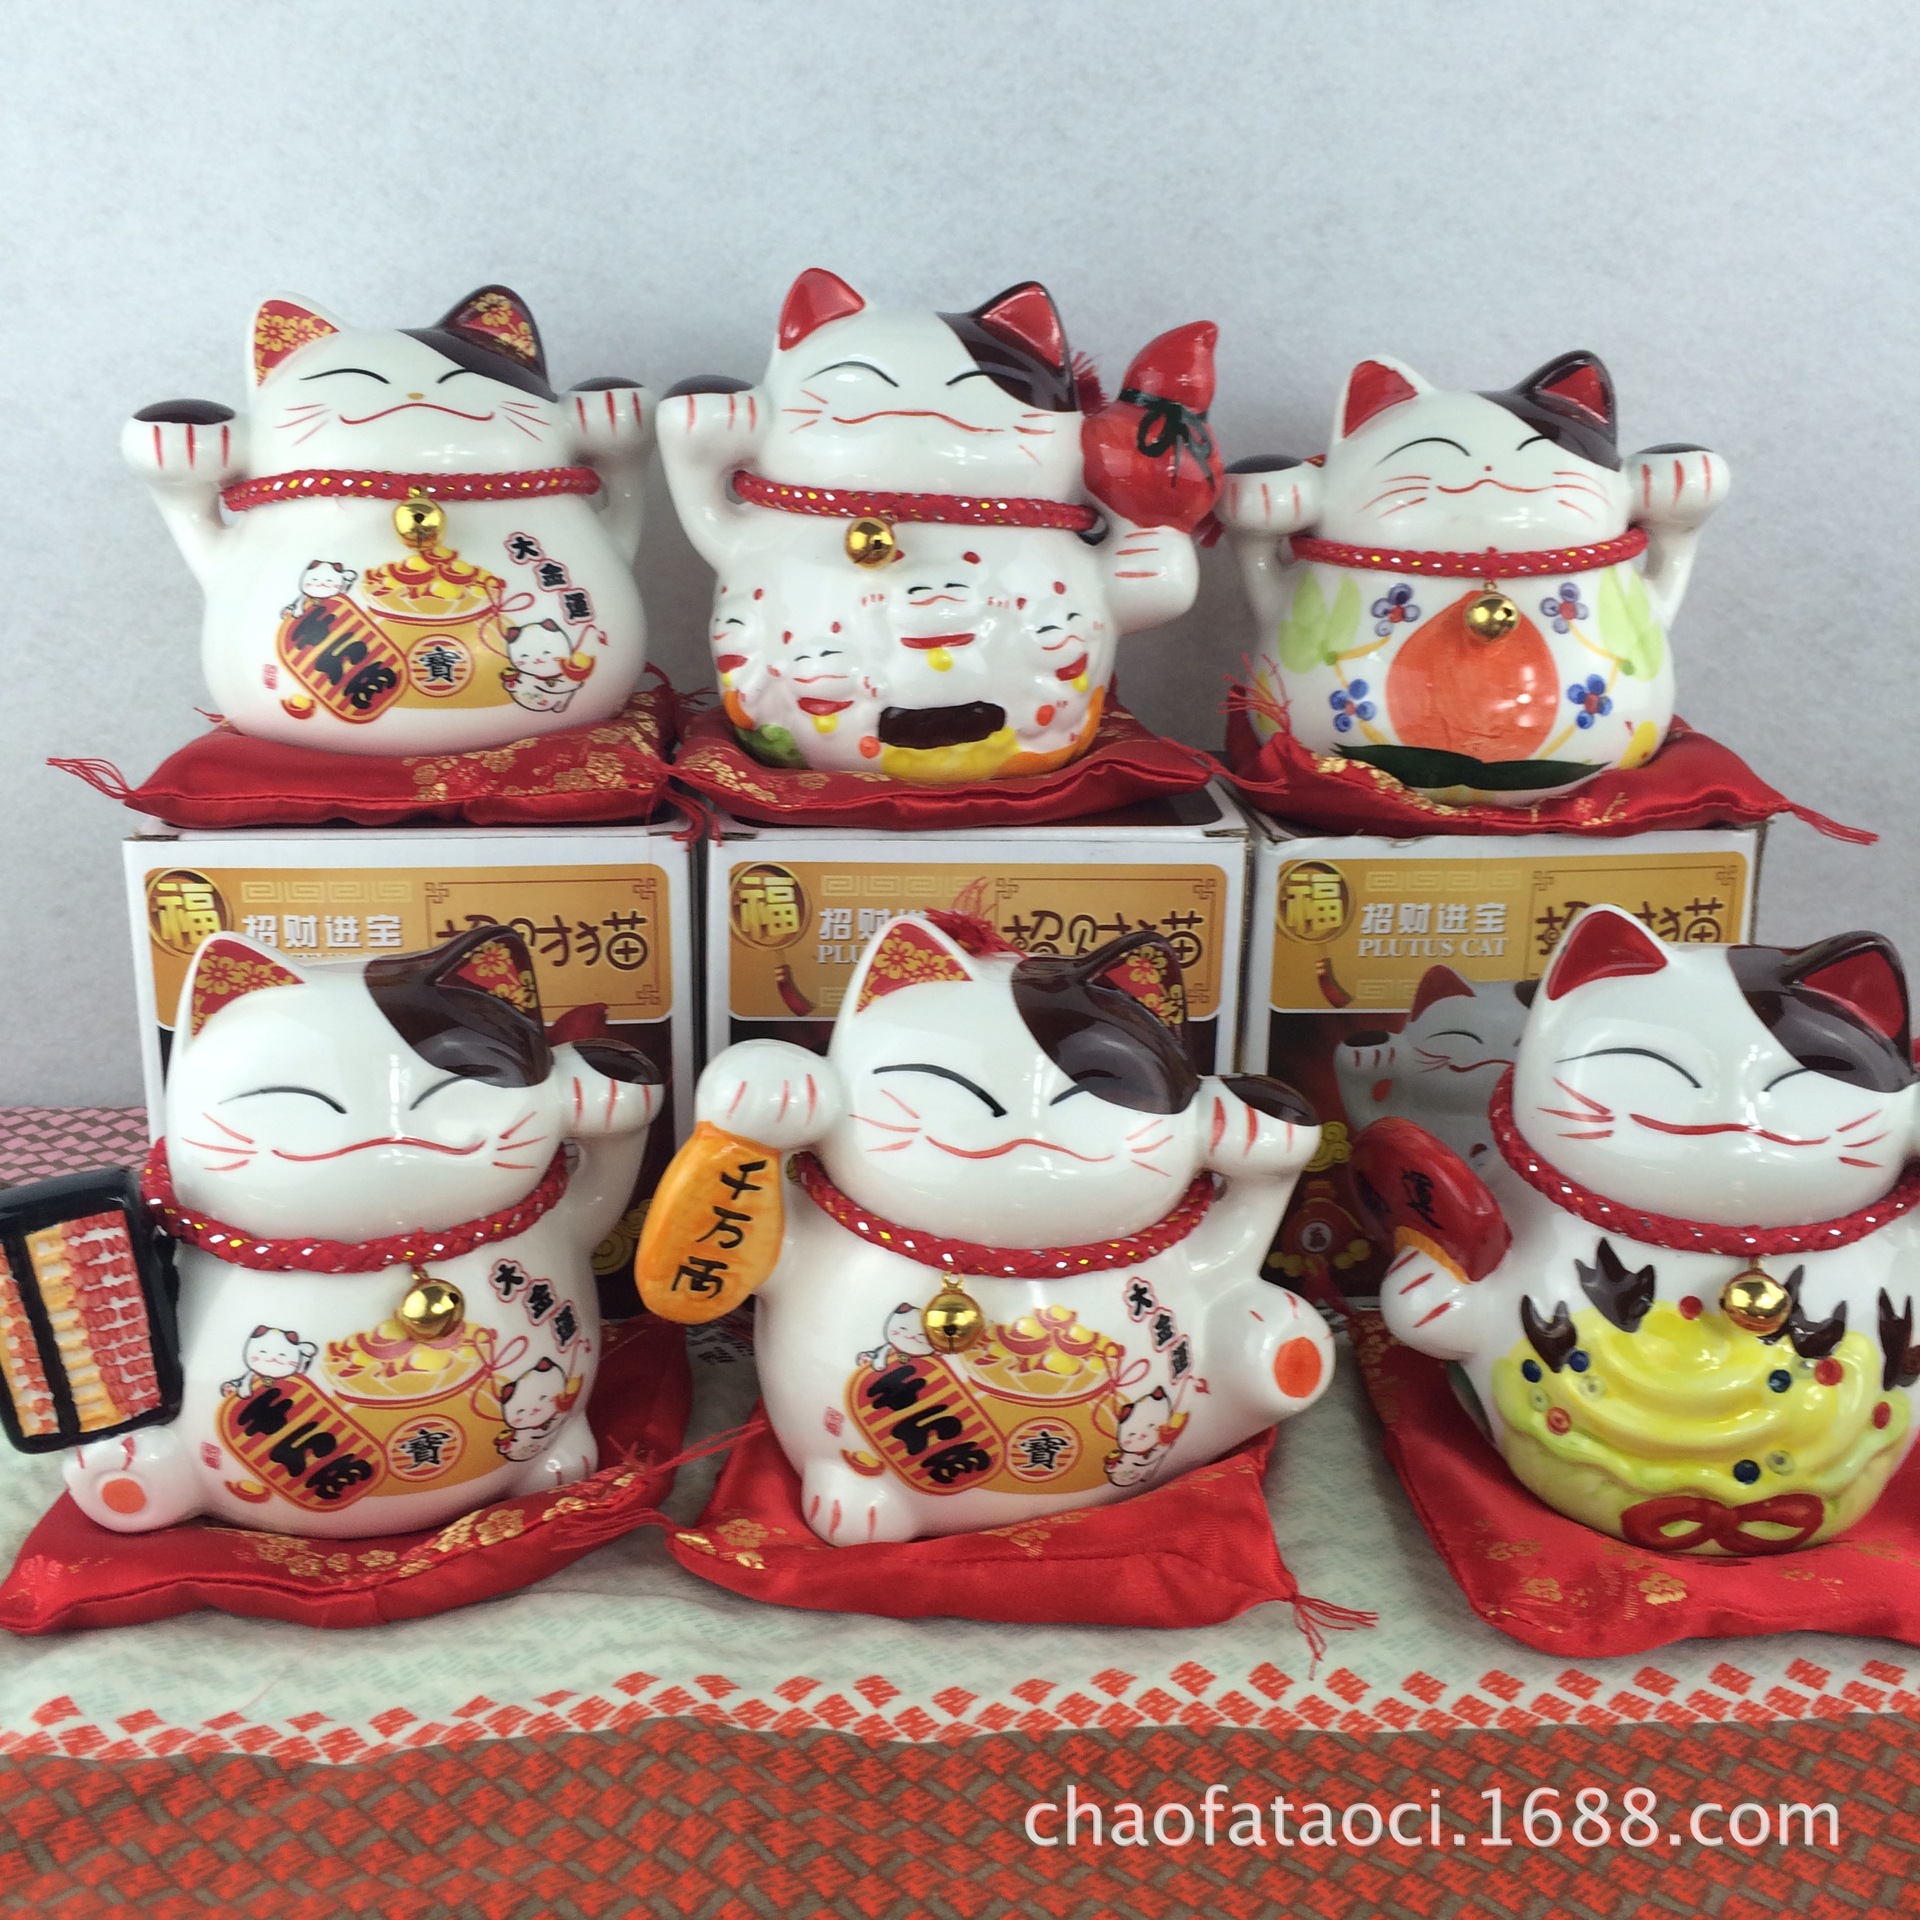 创意新款手绘陶瓷五福招财猫储蓄罐工艺品7款混装出货猫礼品